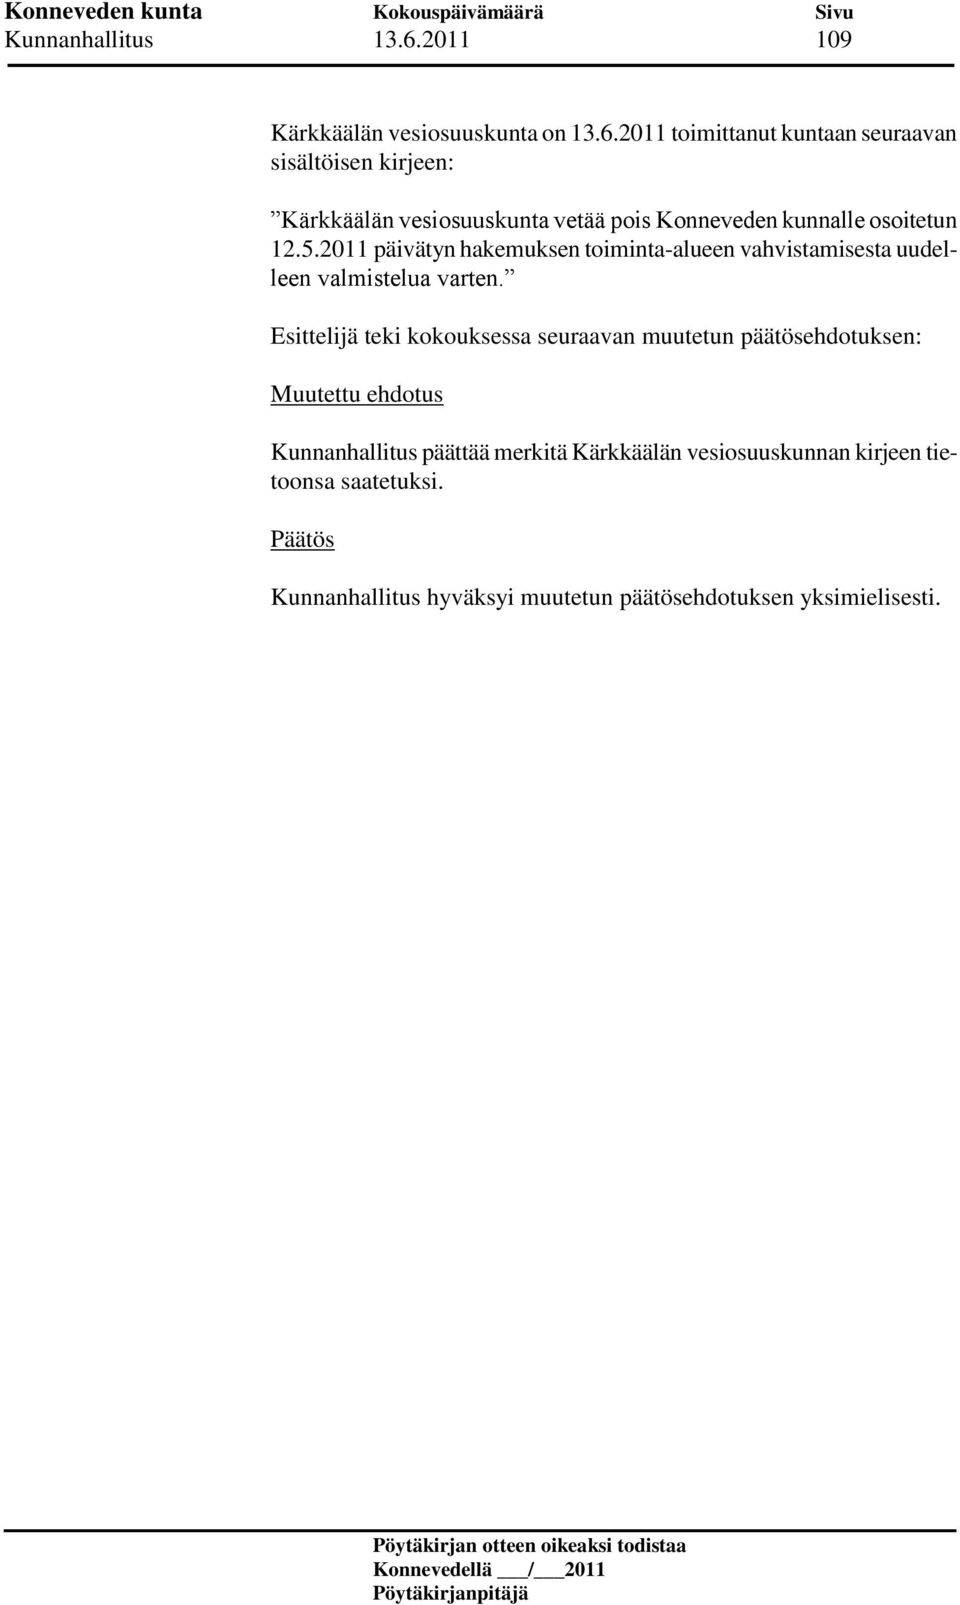 2011 toimittanut kuntaan seuraavan sisältöisen kirjeen: Kärkkäälän vesiosuuskunta vetää pois Konneveden kunnalle osoitetun 12.5.